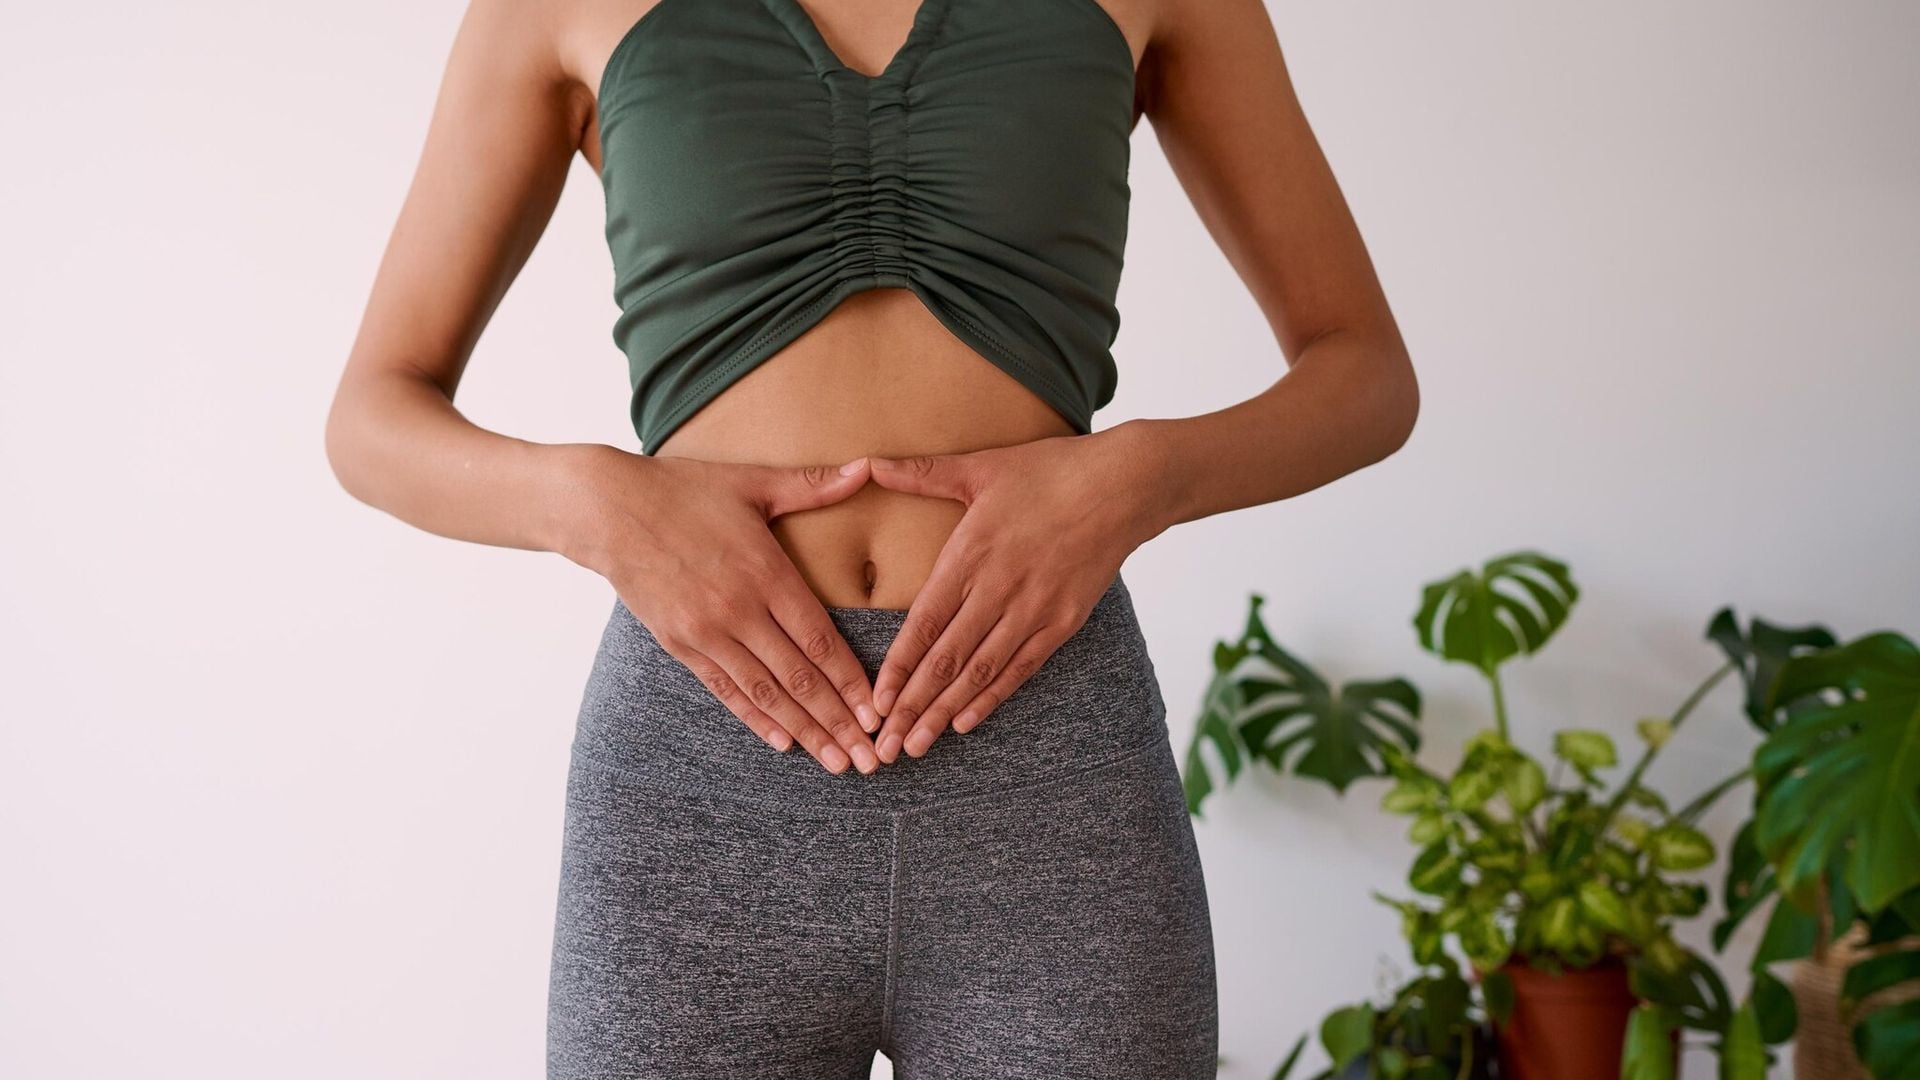 Las adherencias pélvicas, ¿pueden poner en riesgo el embarazo?